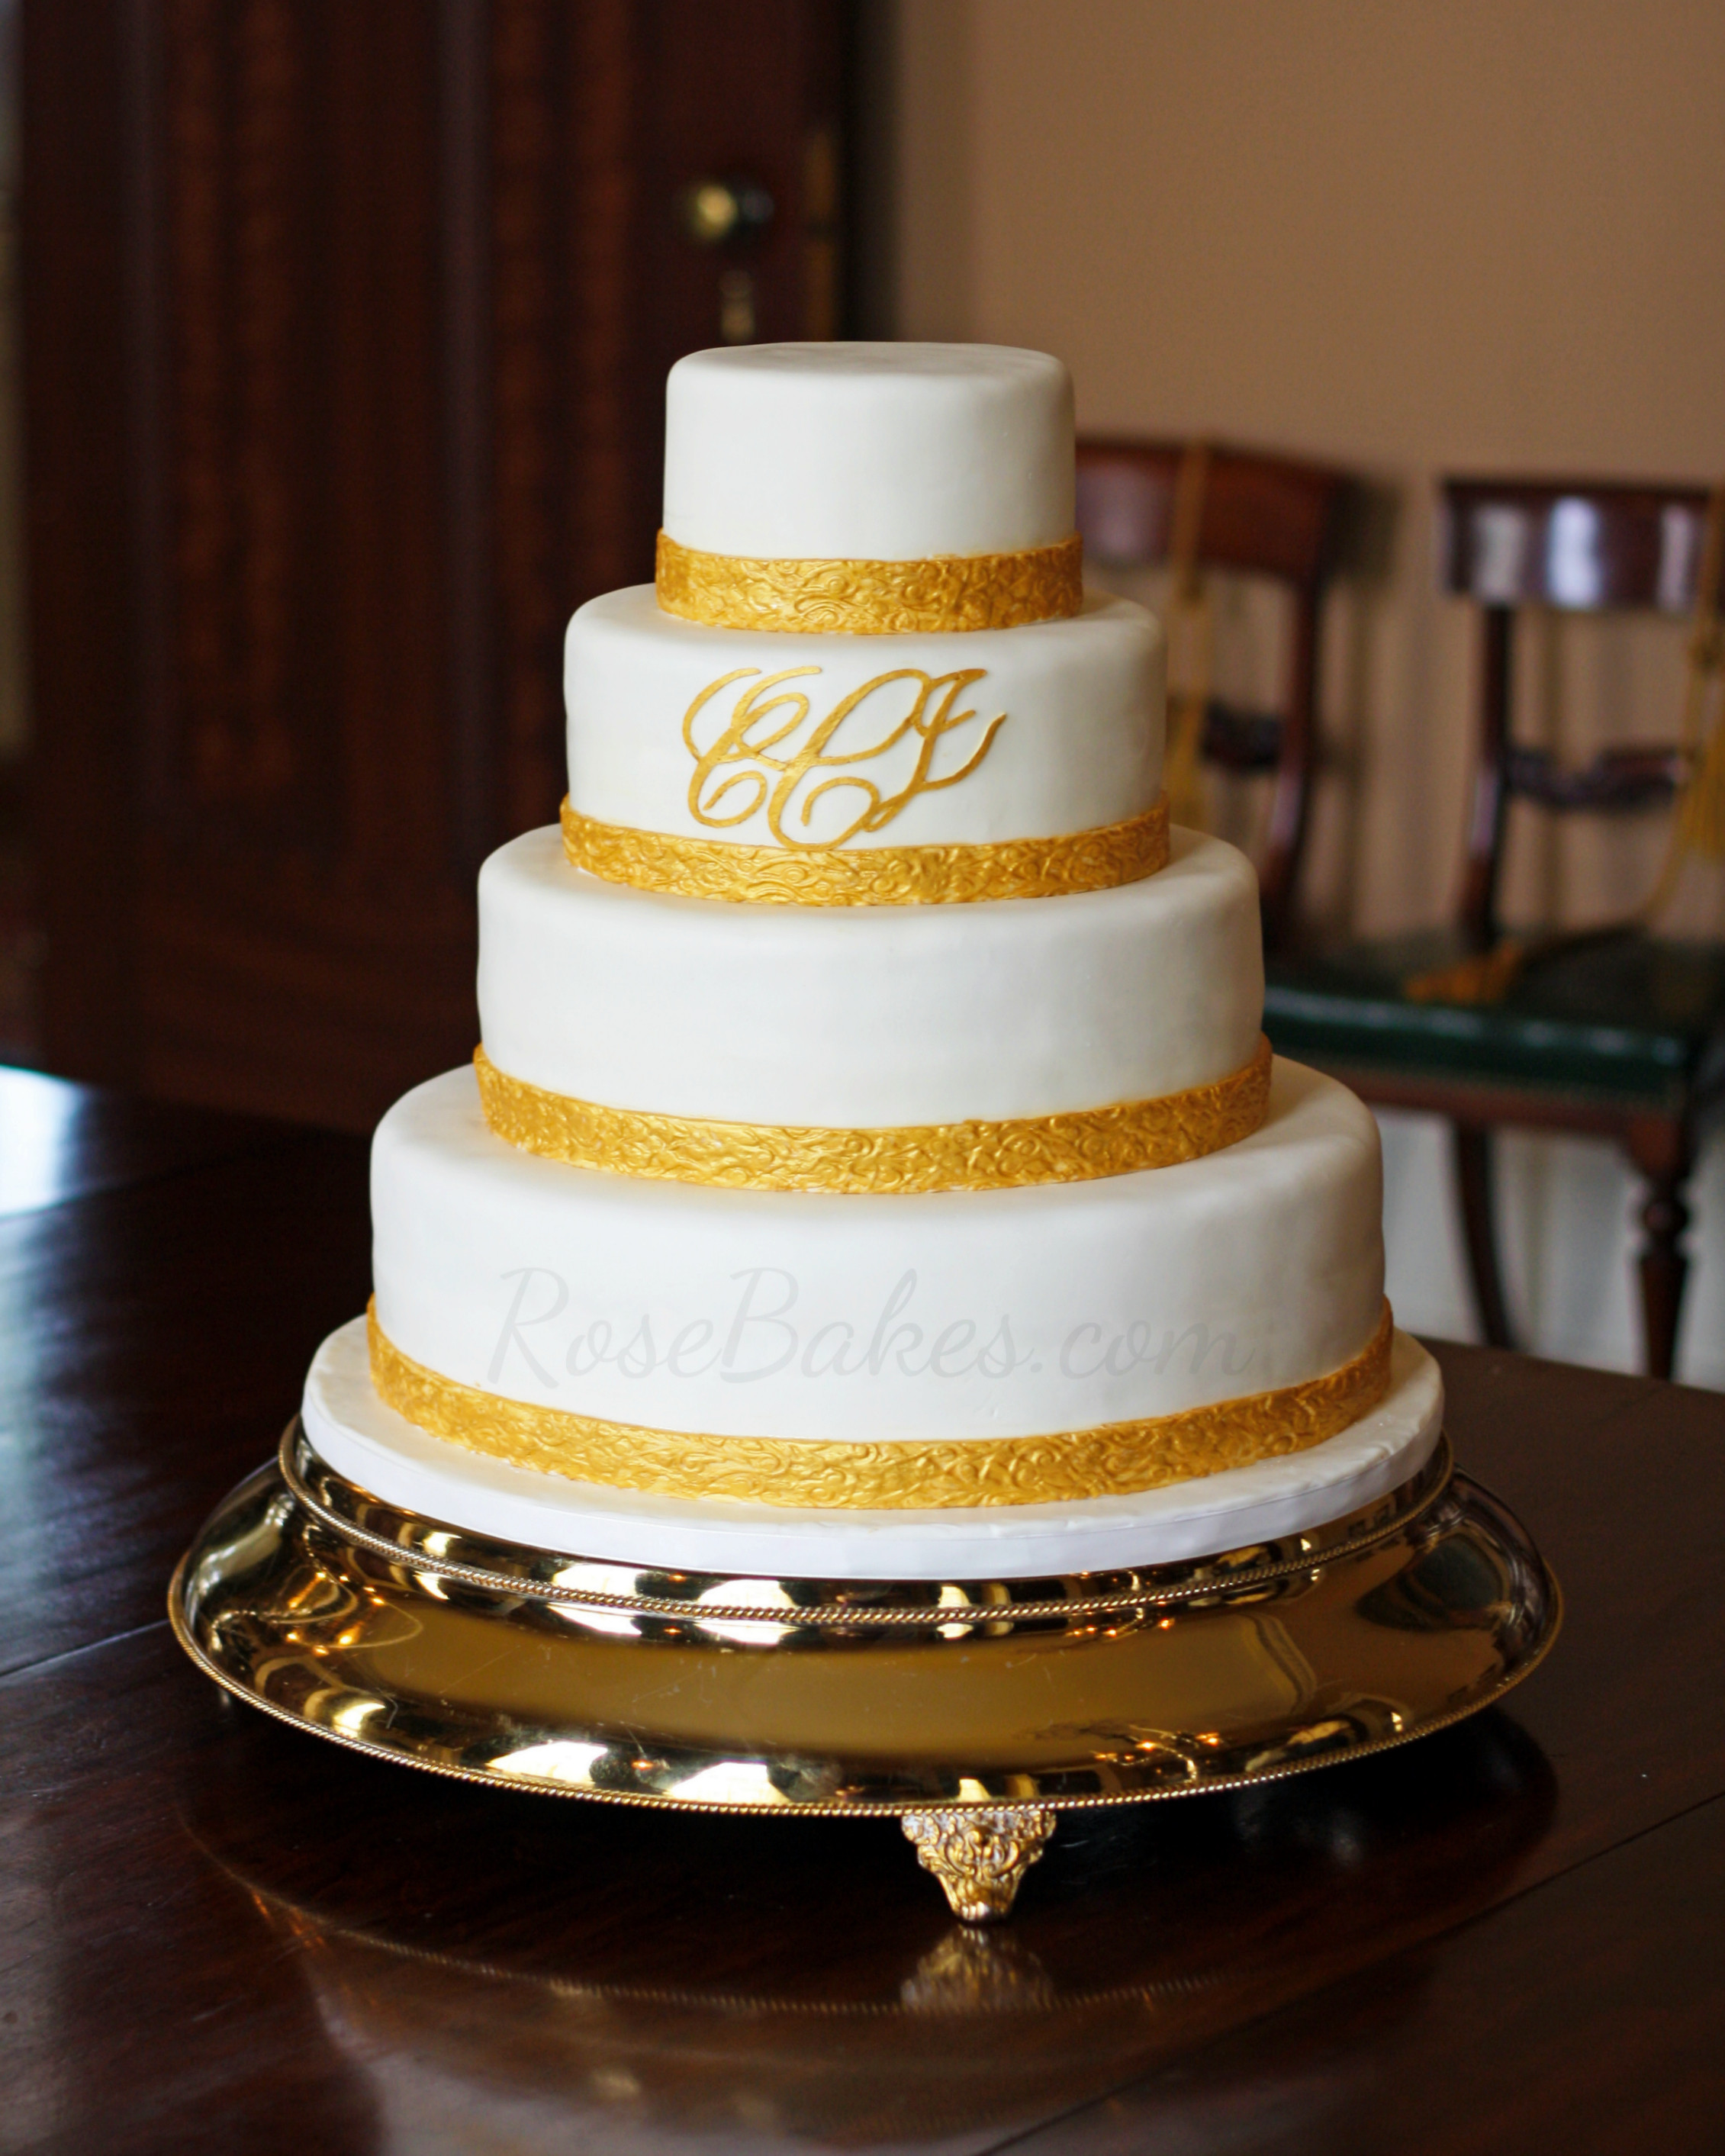 Wedding Cakes Monogram
 Classic Gold Monogrammed Wedding Cake Rose Bakes